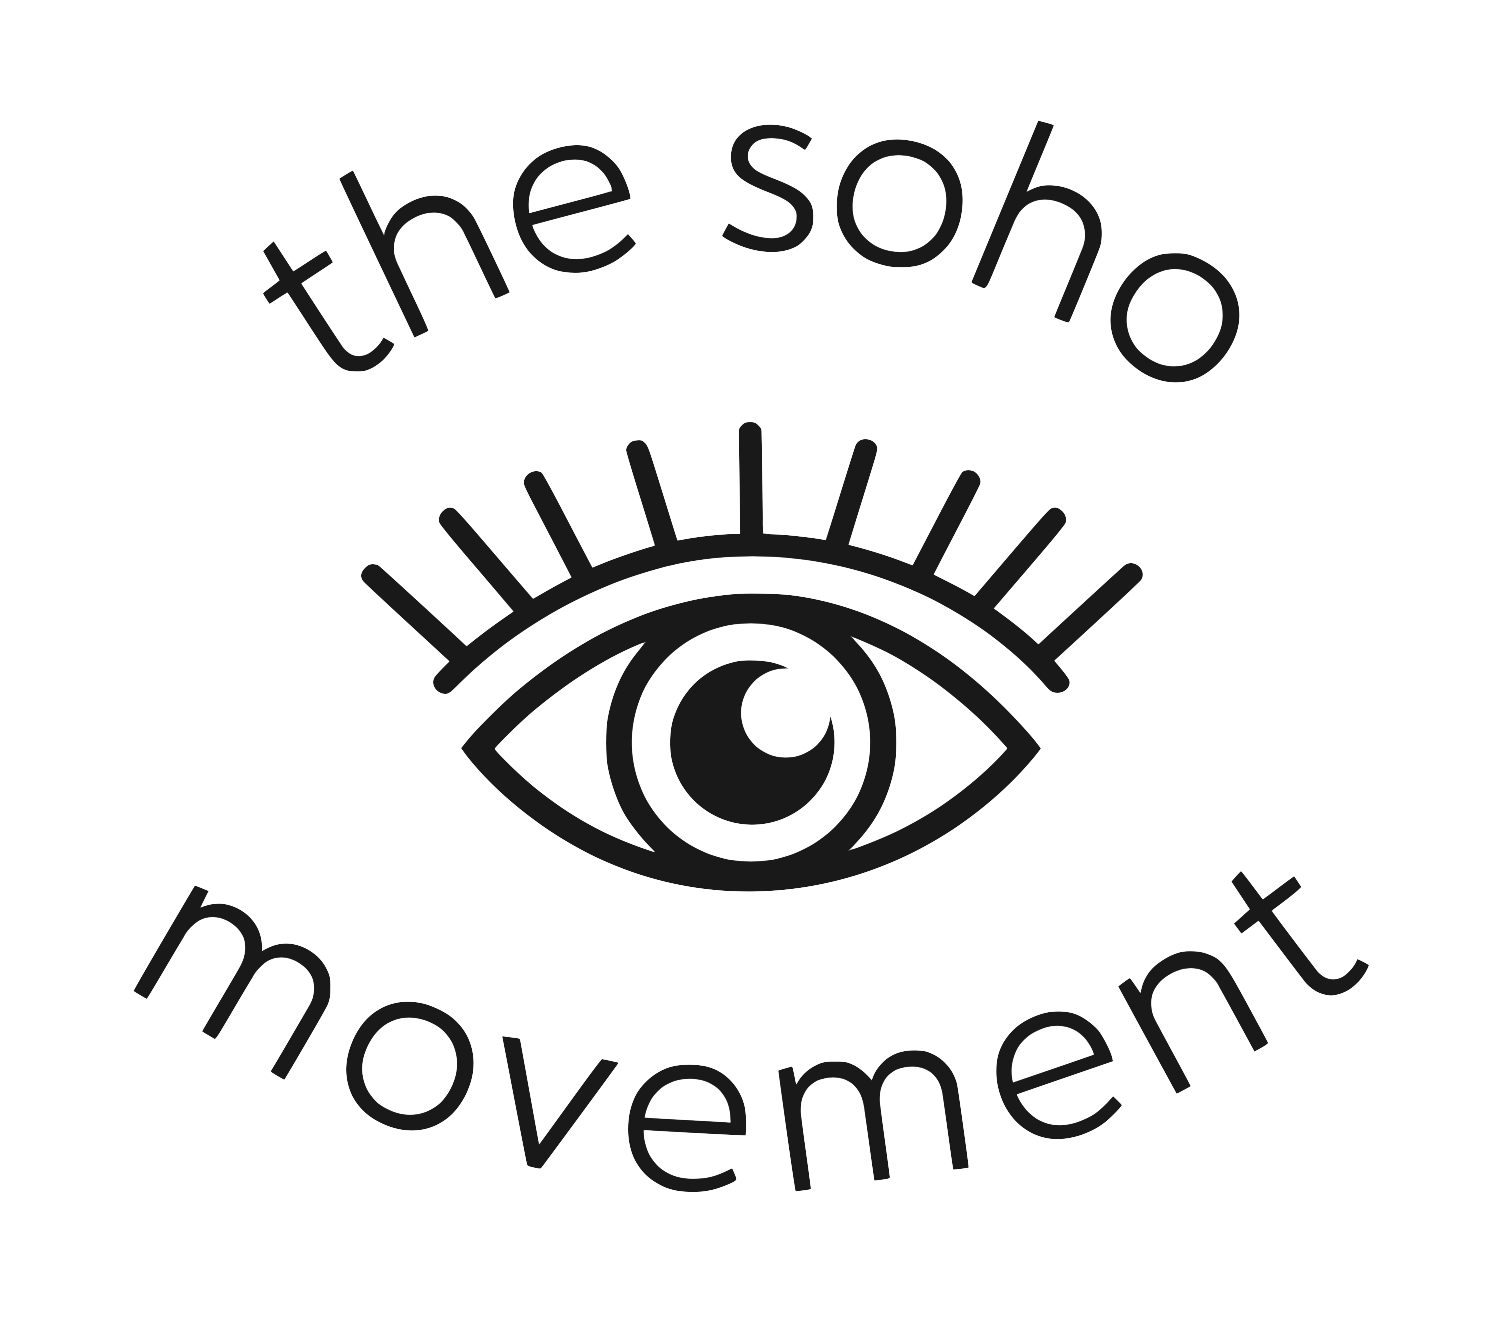 The Soho Movement